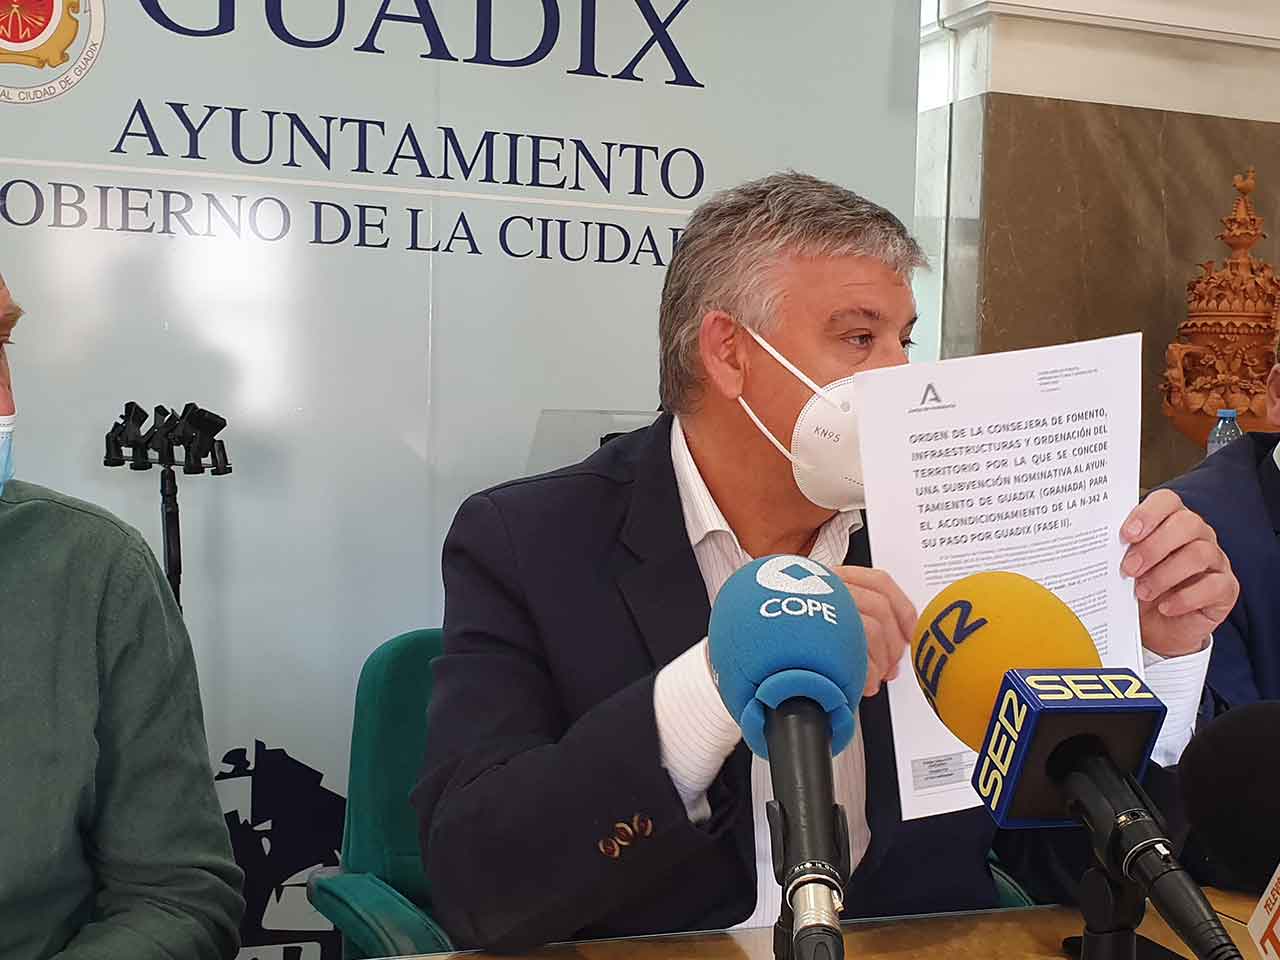 Alcalde de Guadix